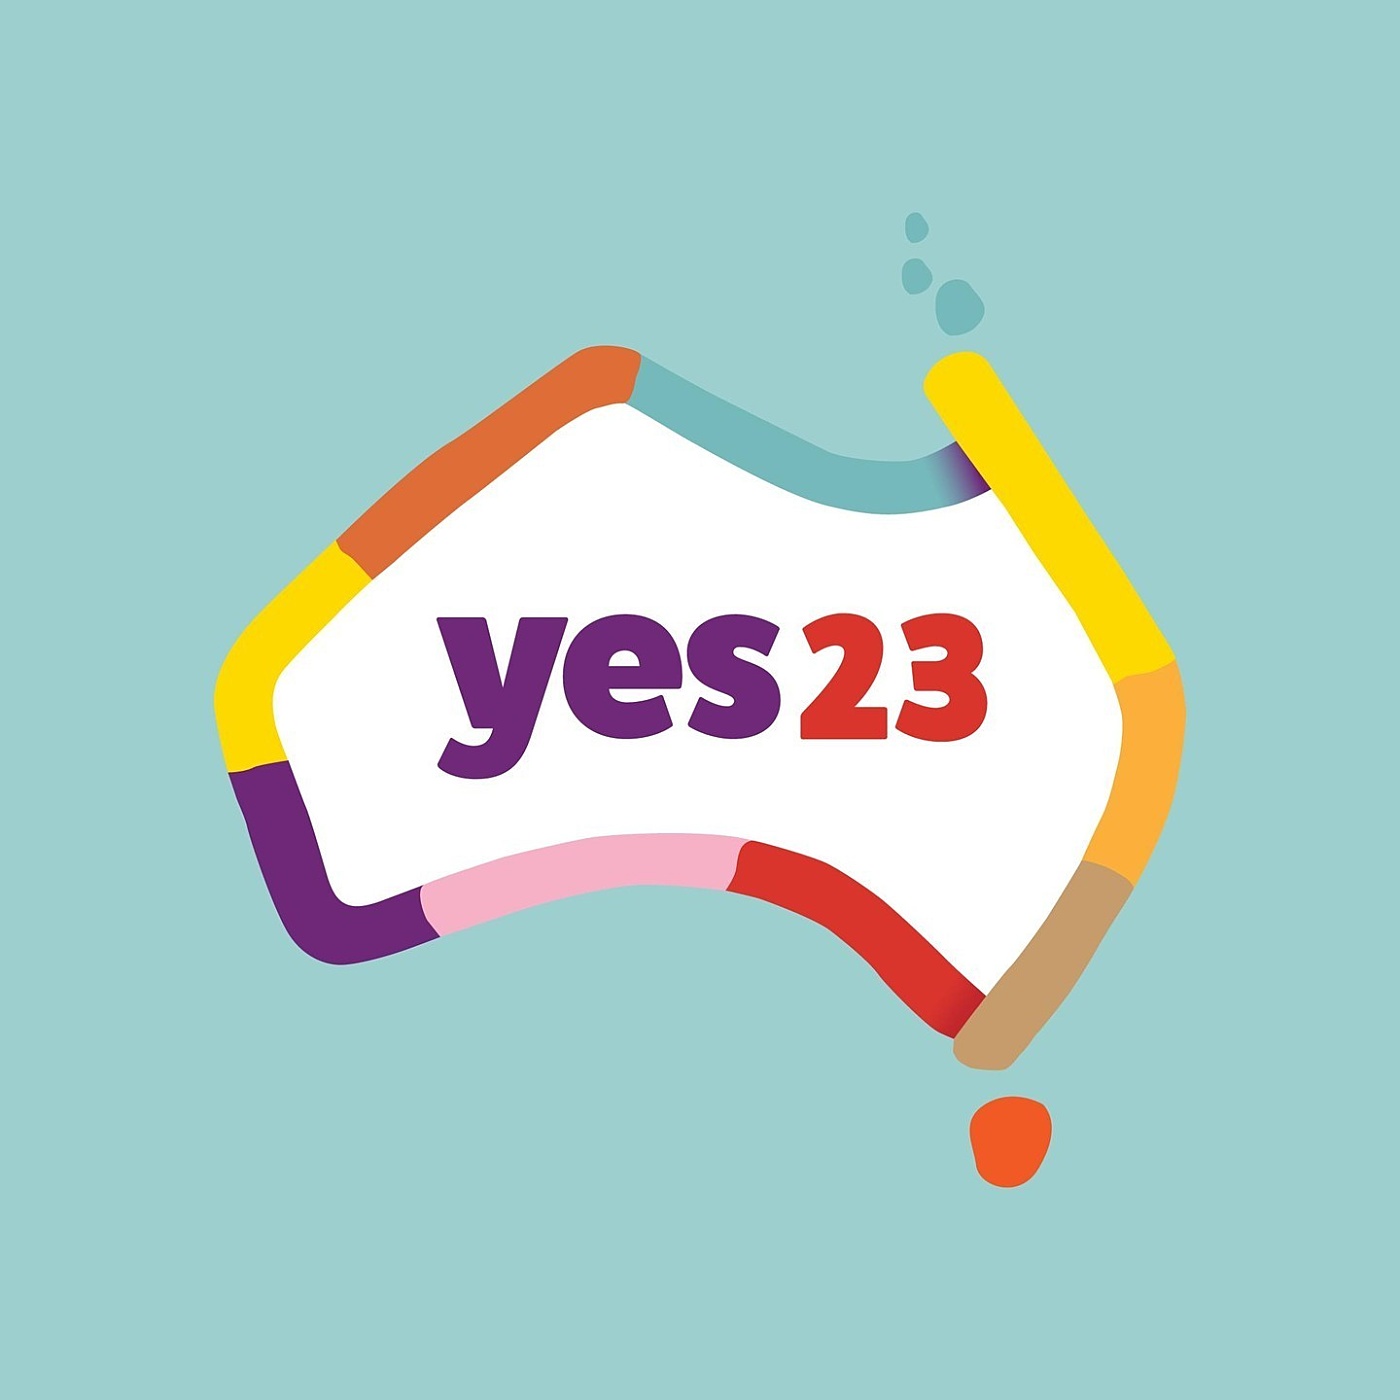 Yes logo